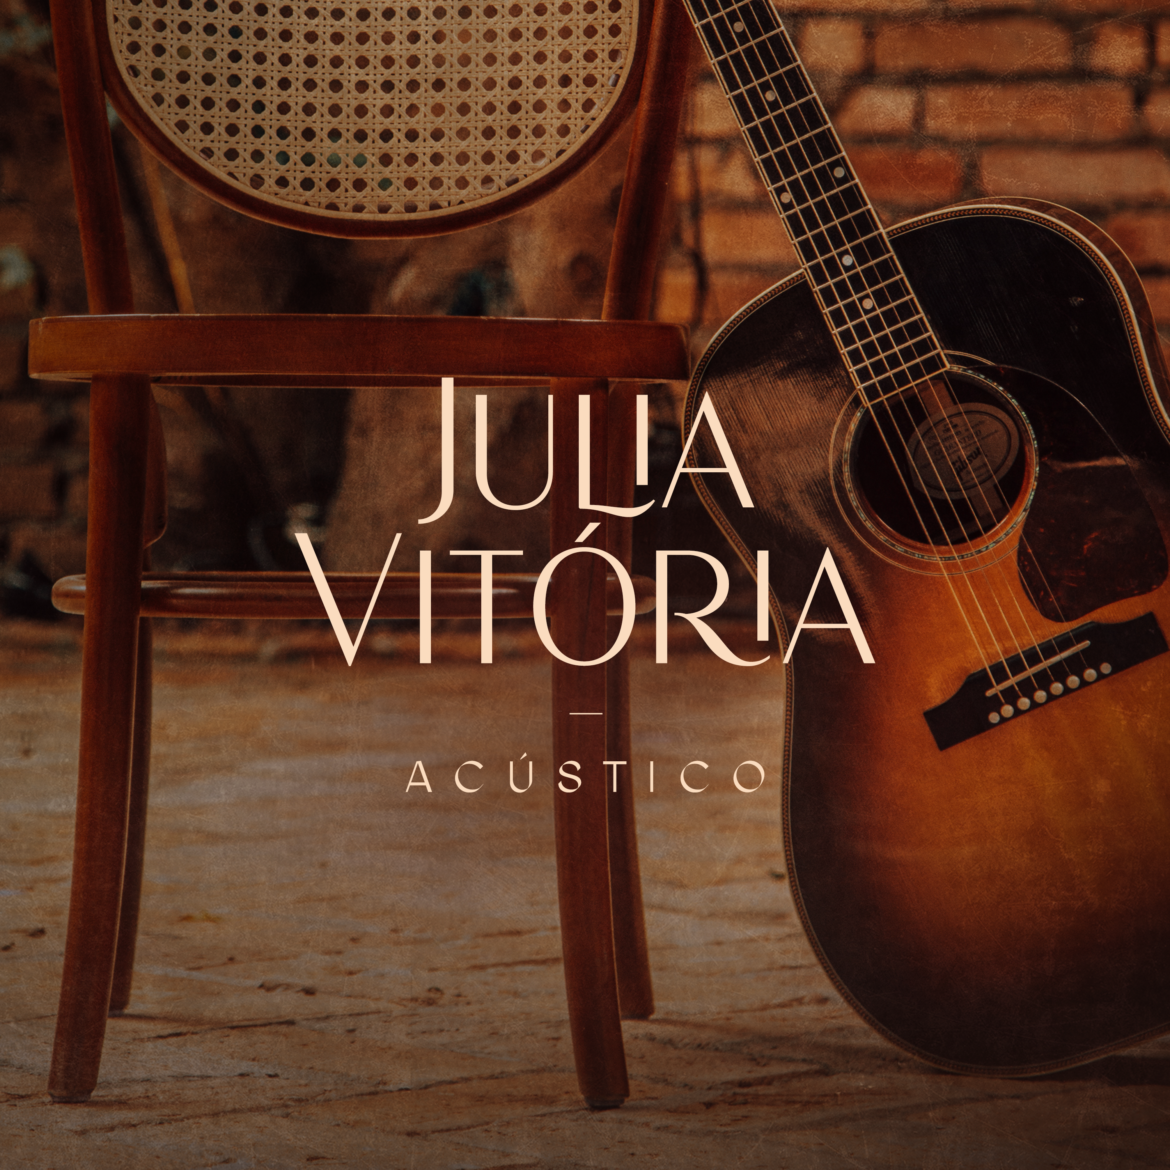 Julia Vitória lança EP acústico com faixa bônus em inglês